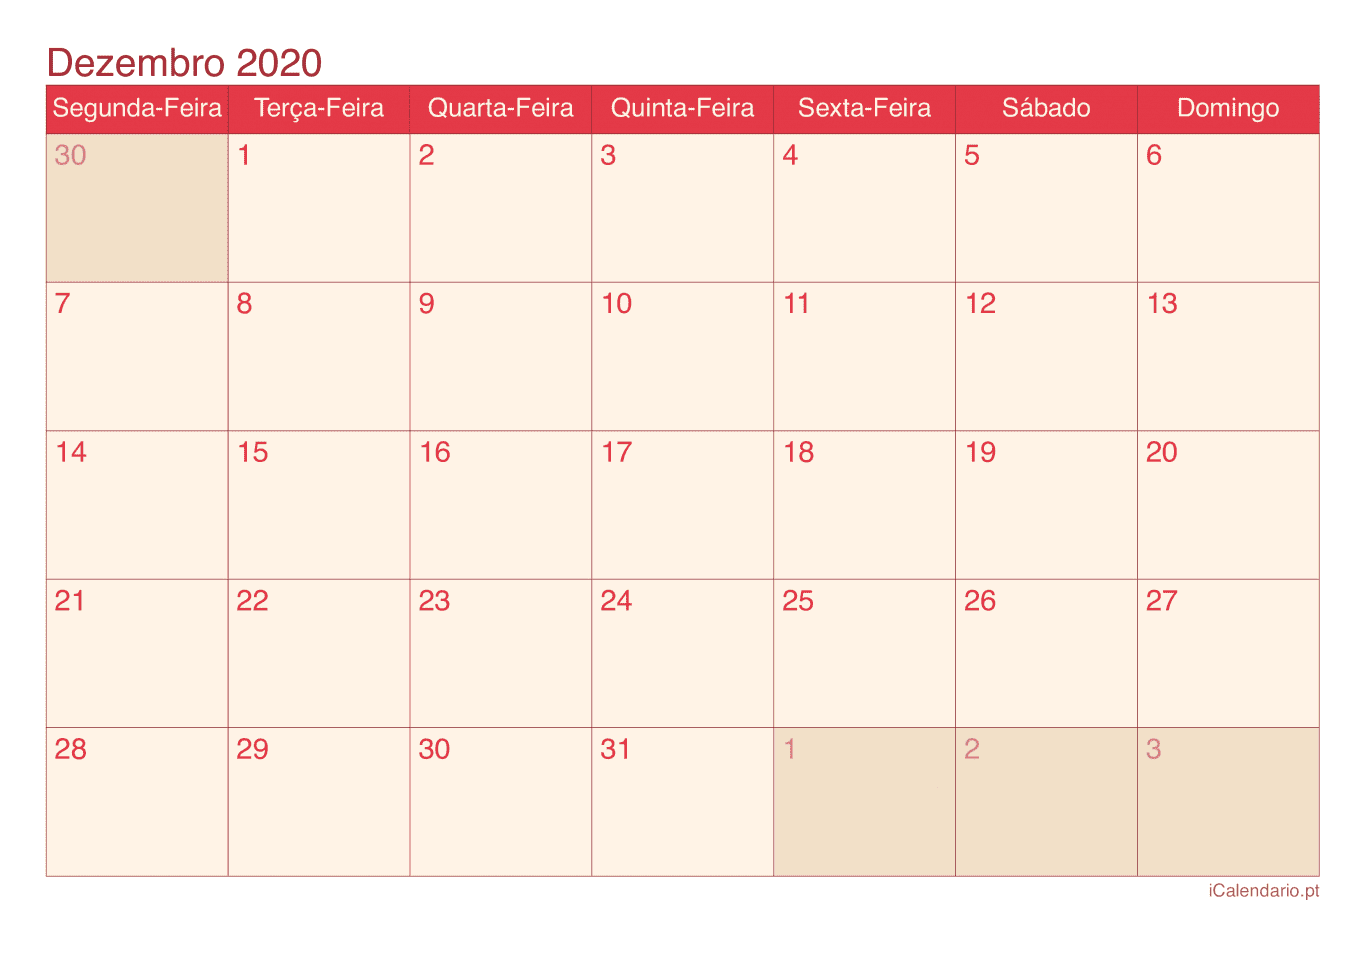 Calendário de dezembro 2020 - Cherry